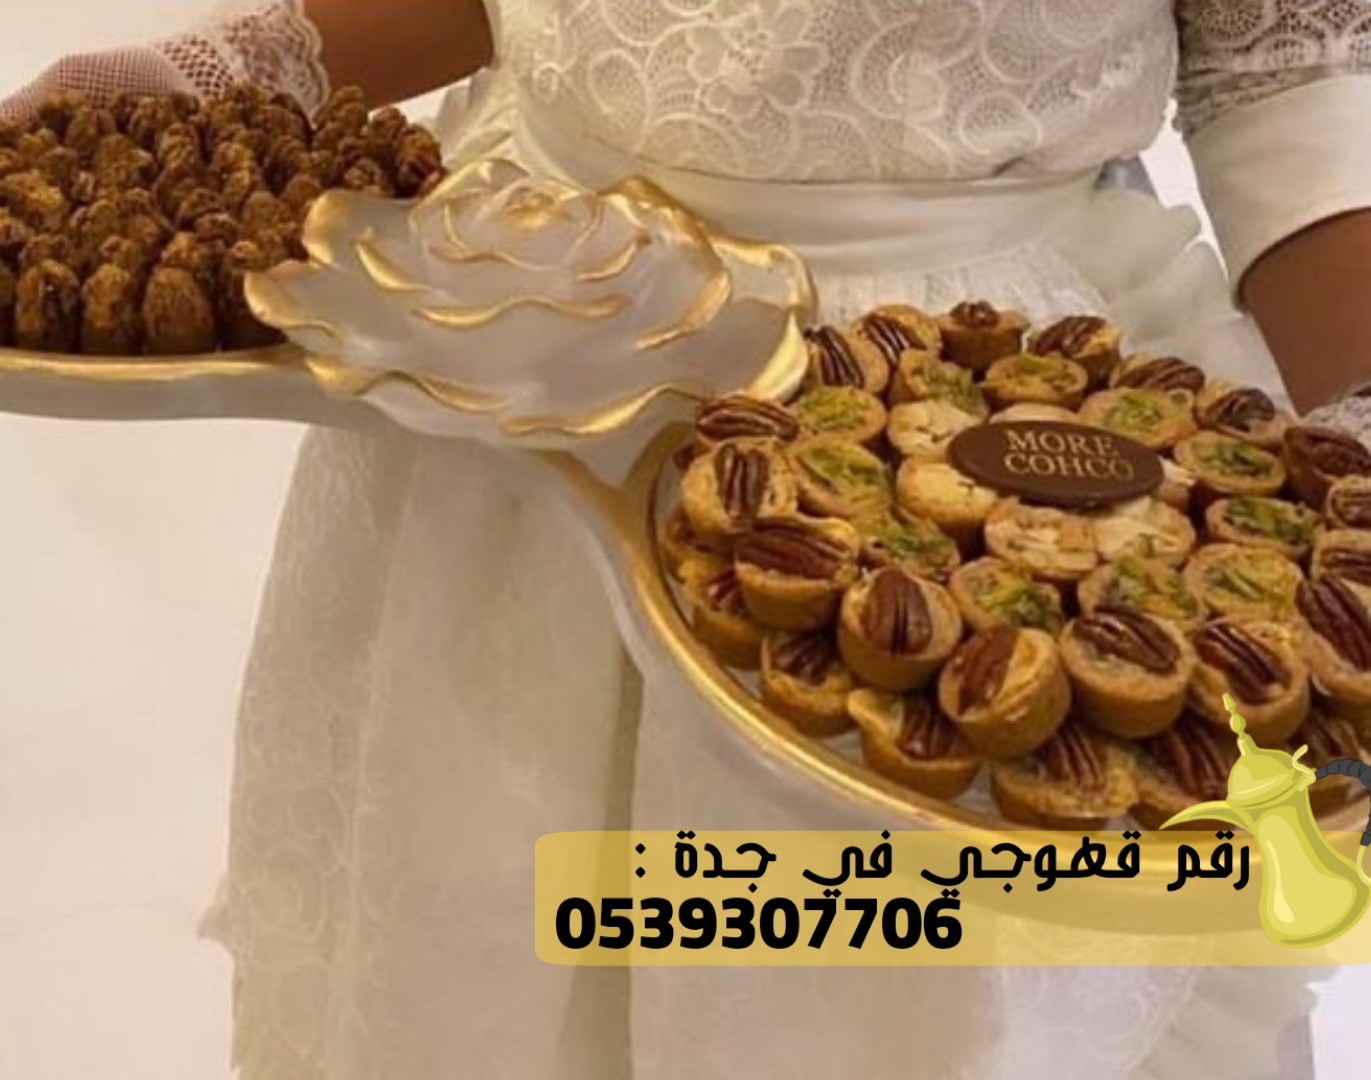 قهوجي و قهوجيات صبابات في جدة, 0539307706